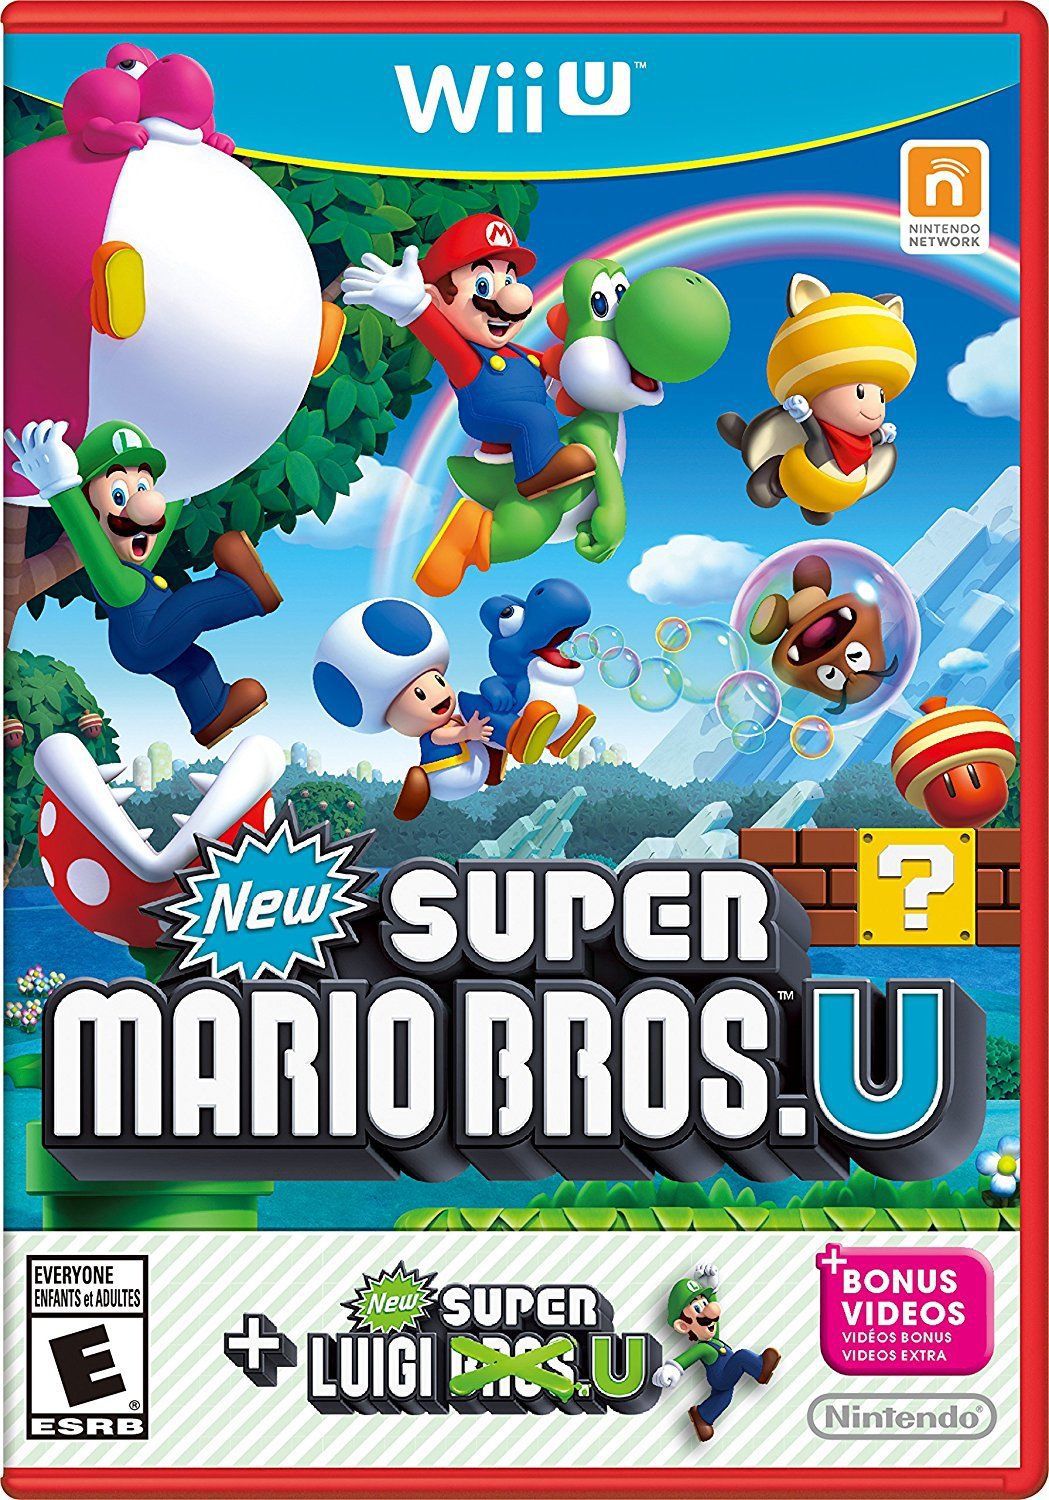 Jogo Super Mario Bros 2 no Jogos 360